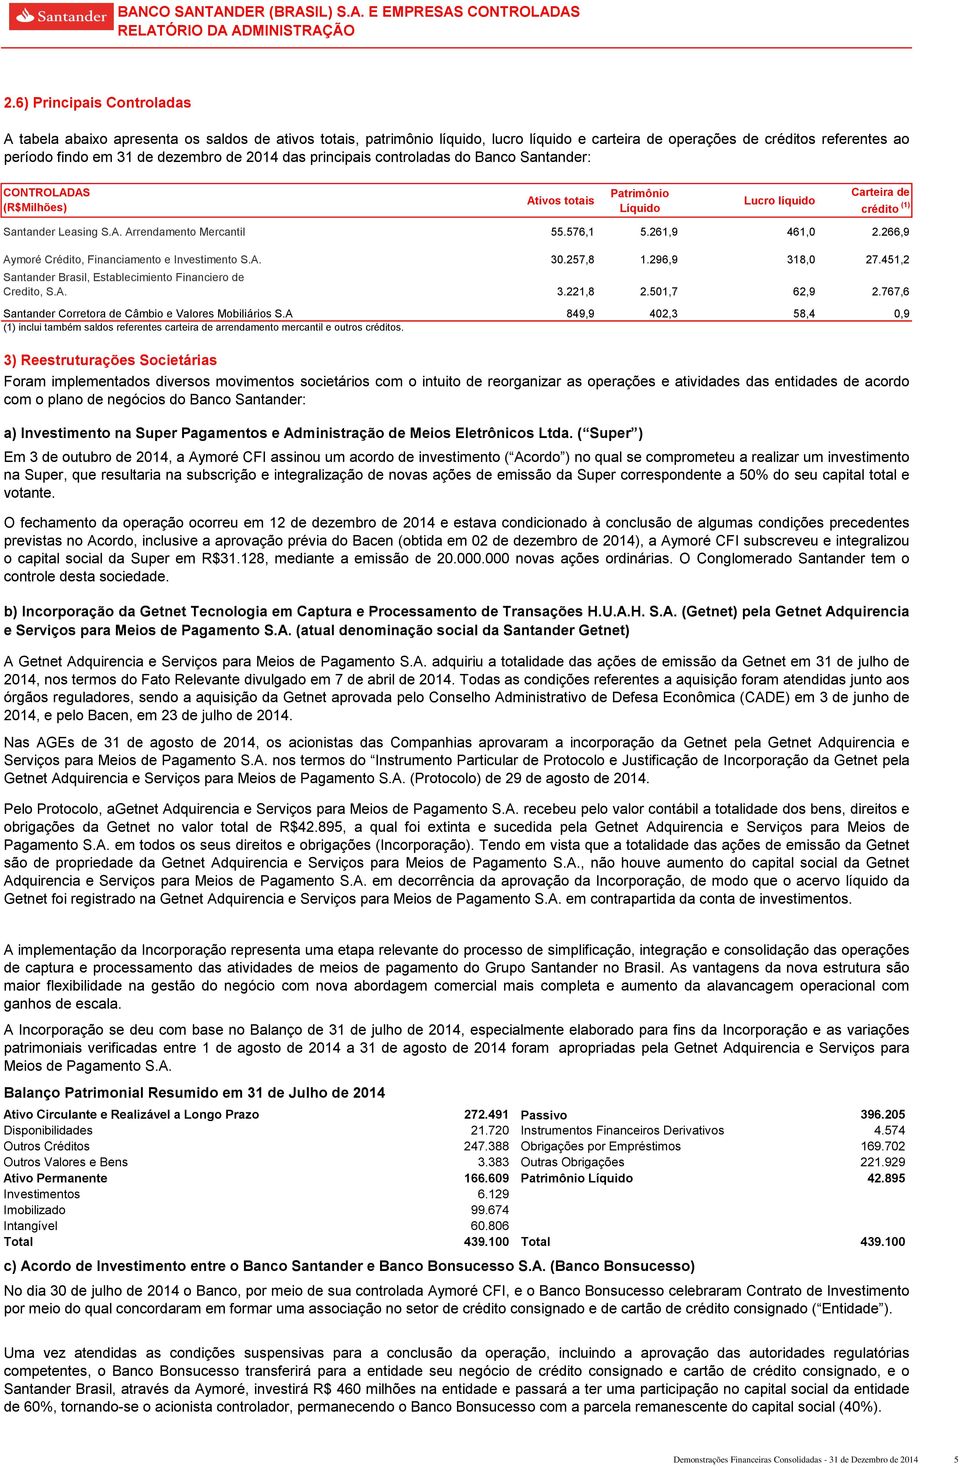 2014 das principais controladas do Santander: CONTROLADAS (R$Milhões) Ativos totais Patrimônio Líquido Lucro líquido Carteira de crédito (1) Santander Leasing S.A. Arrendamento Mercantil Aymoré Crédito, Financiamento e Investimento S.